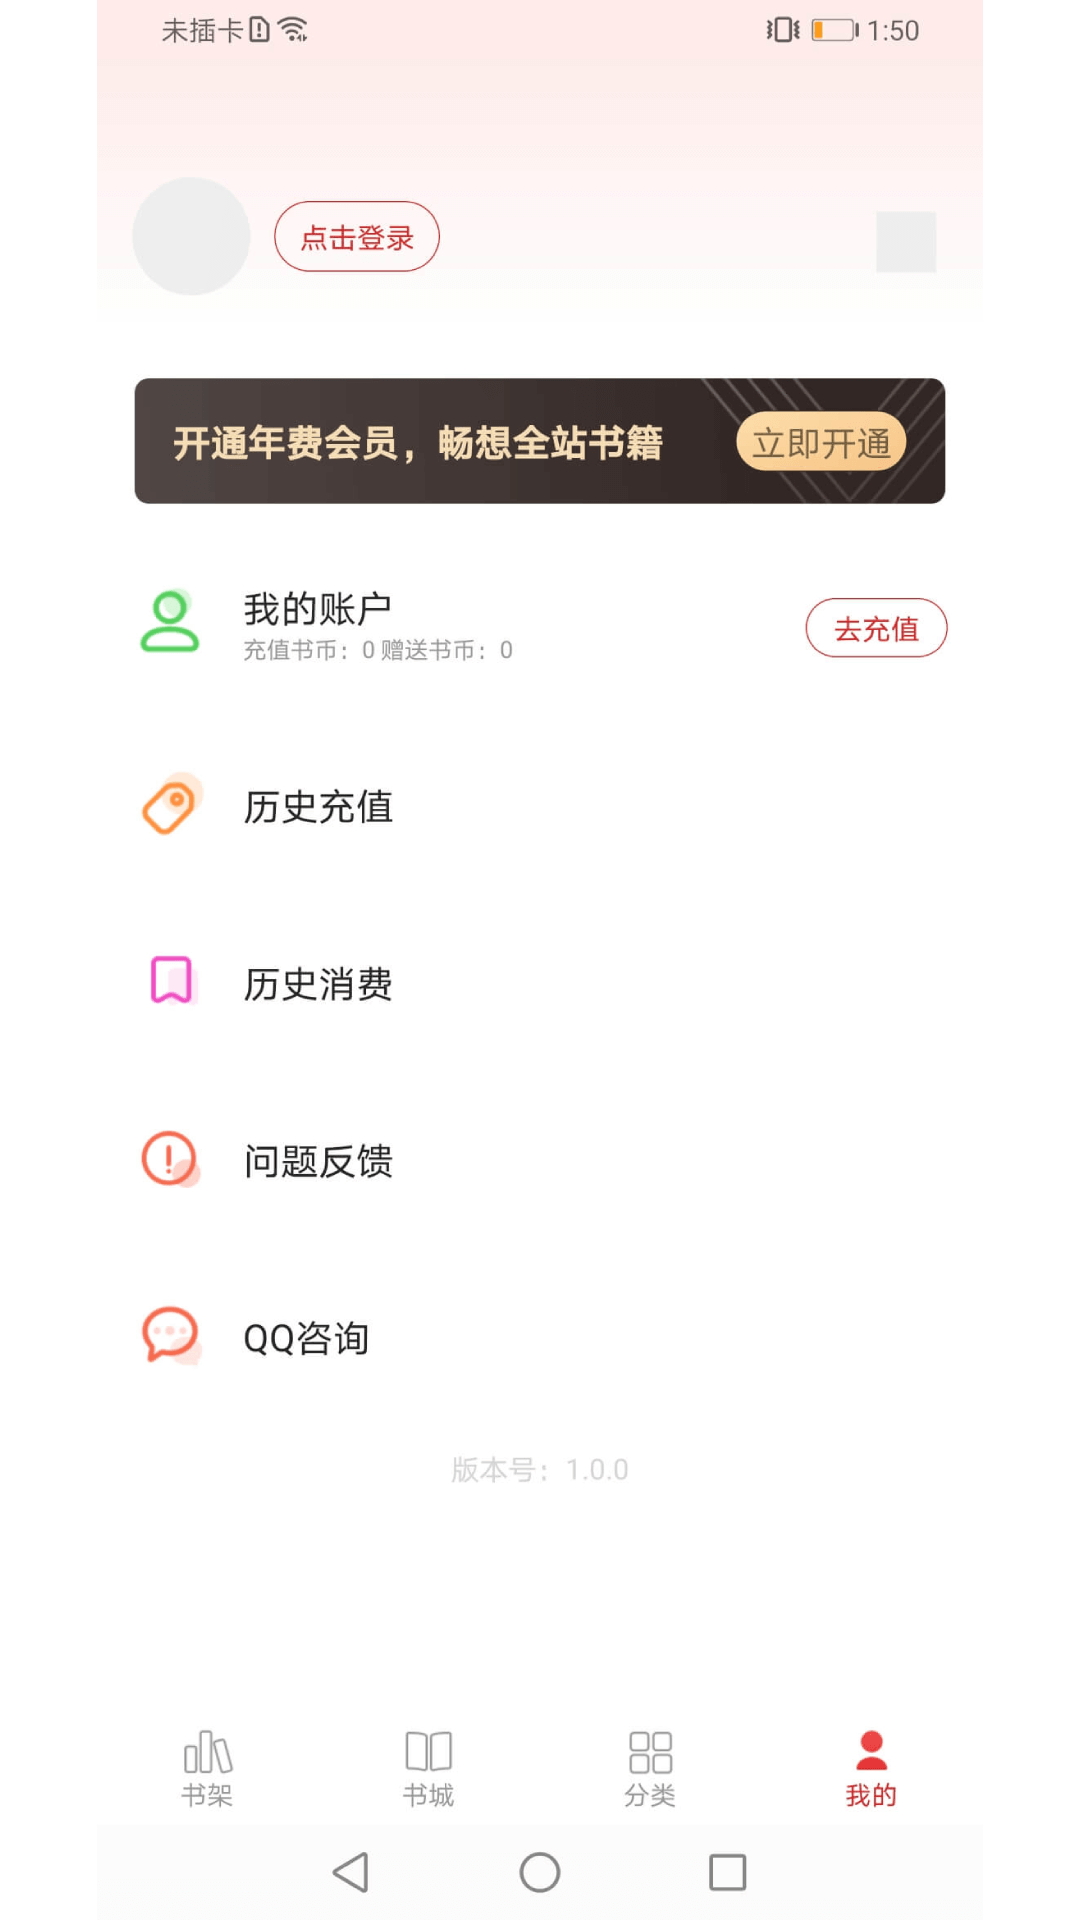 猫语小说app